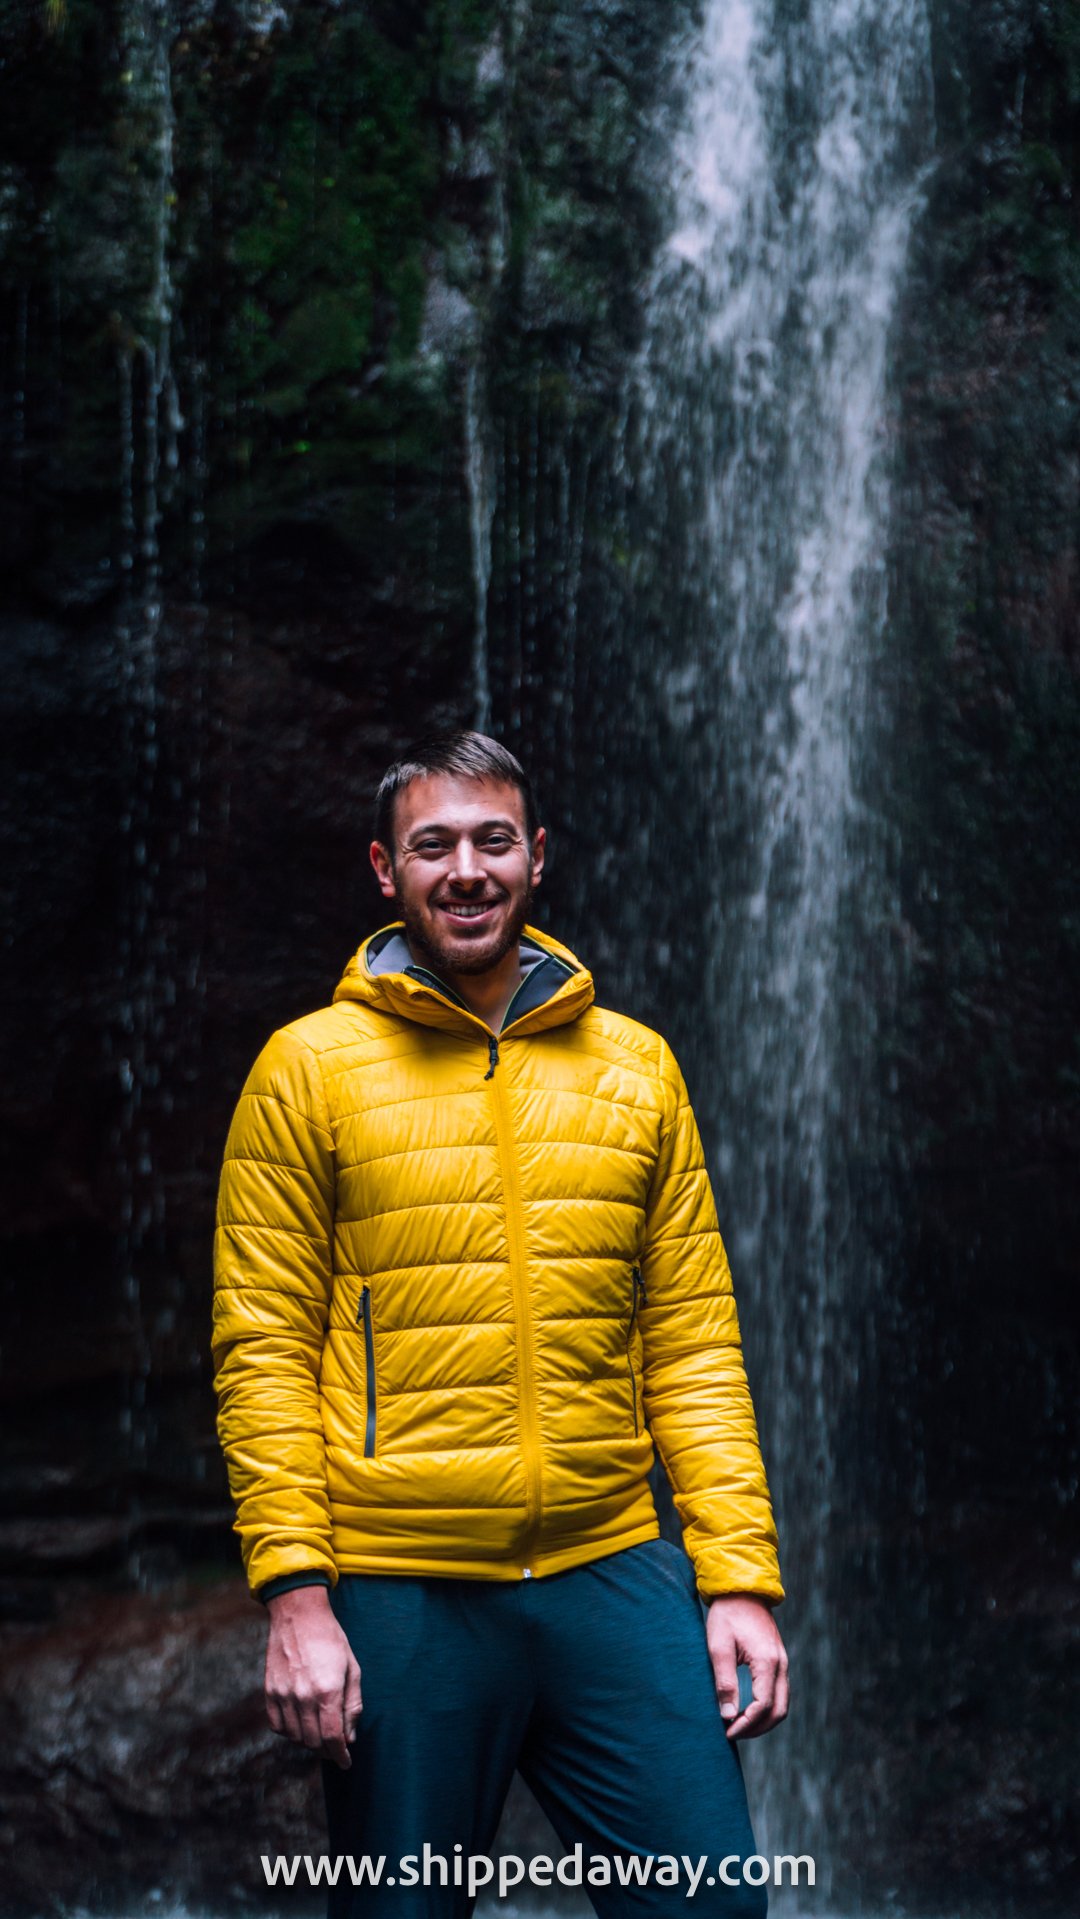 Matej Špan at 25 Fontes waterfall in Madeira